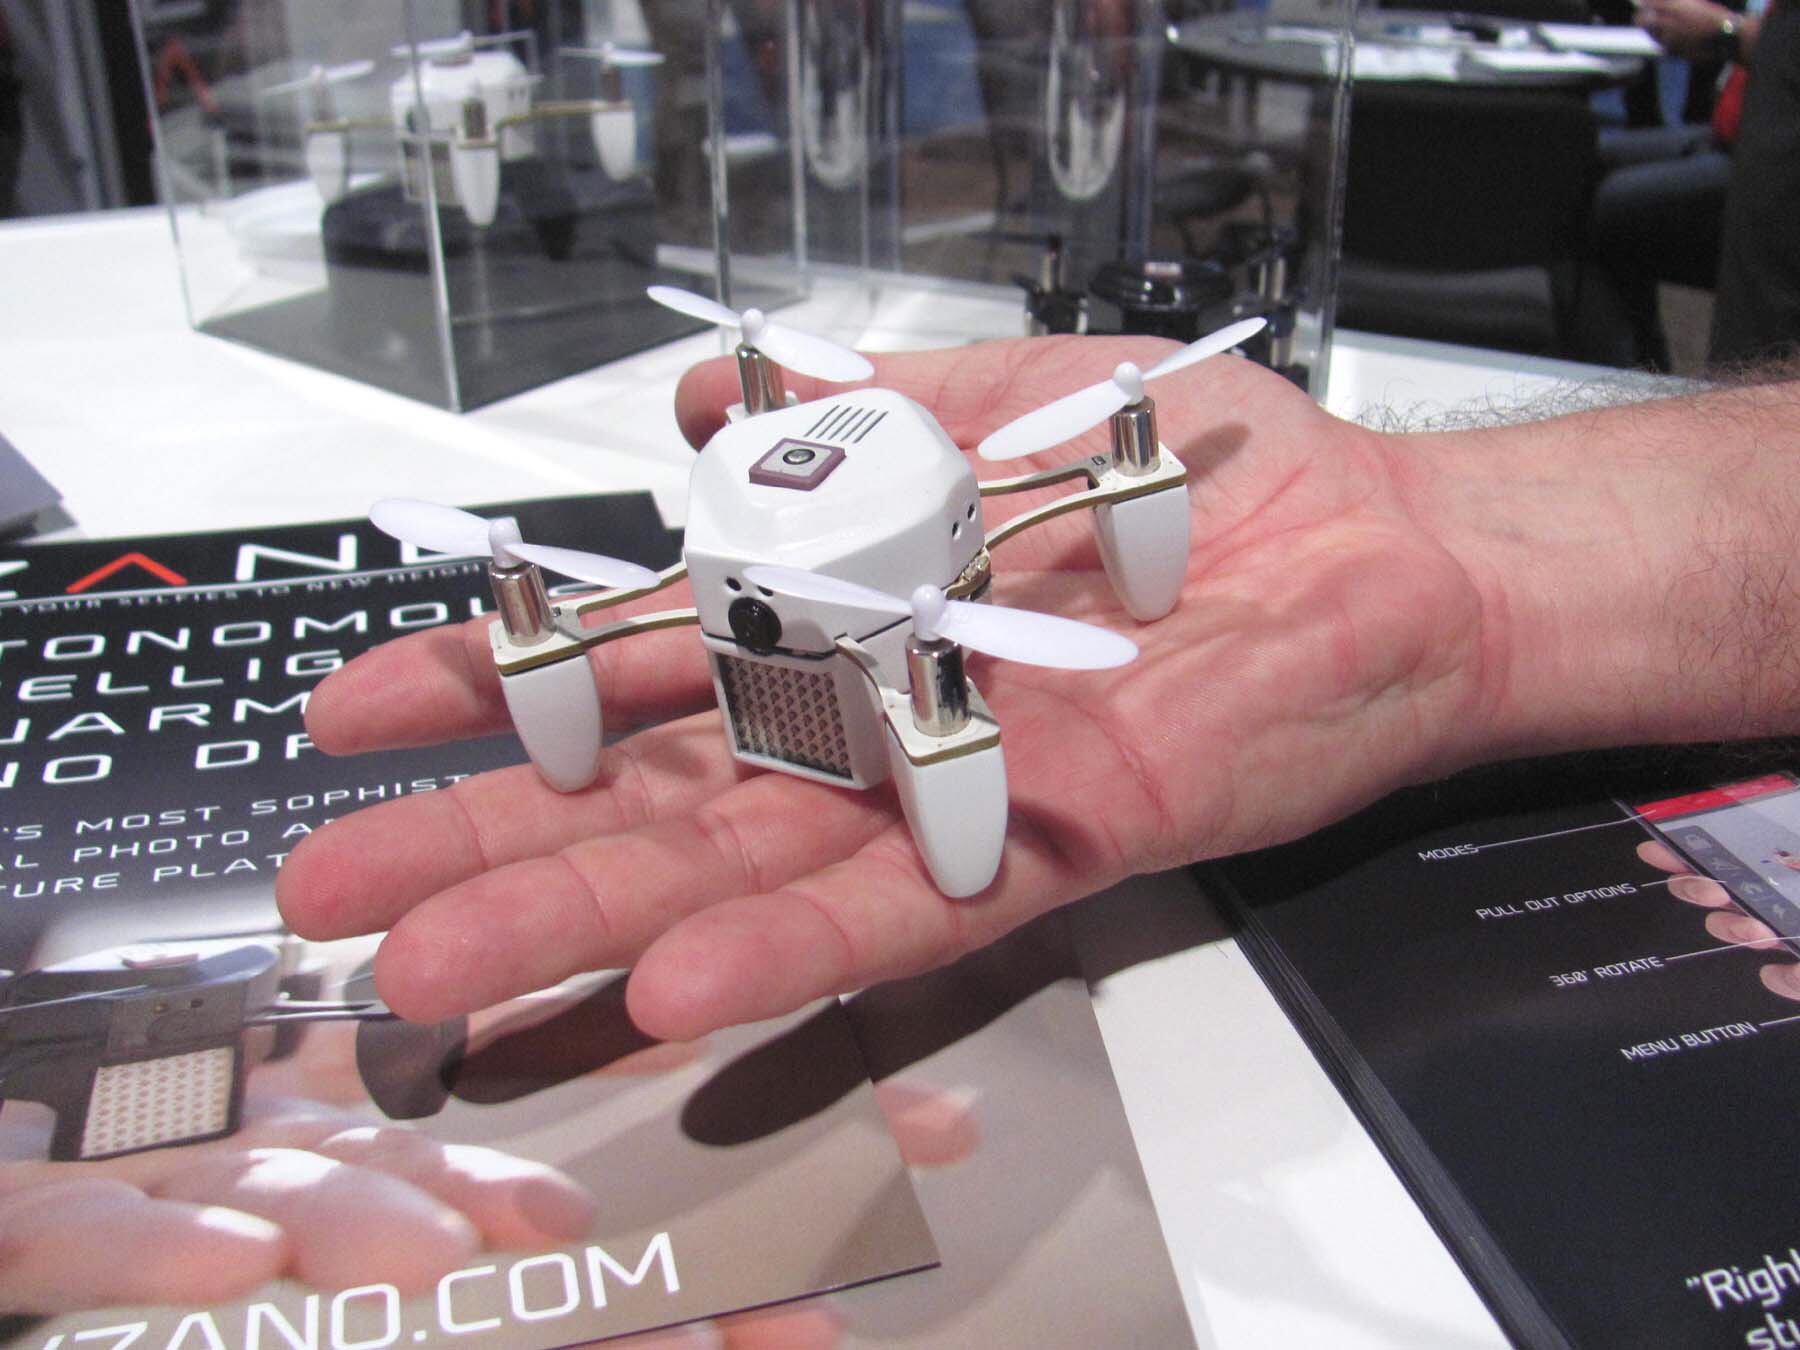 A mini drone at CES 2015